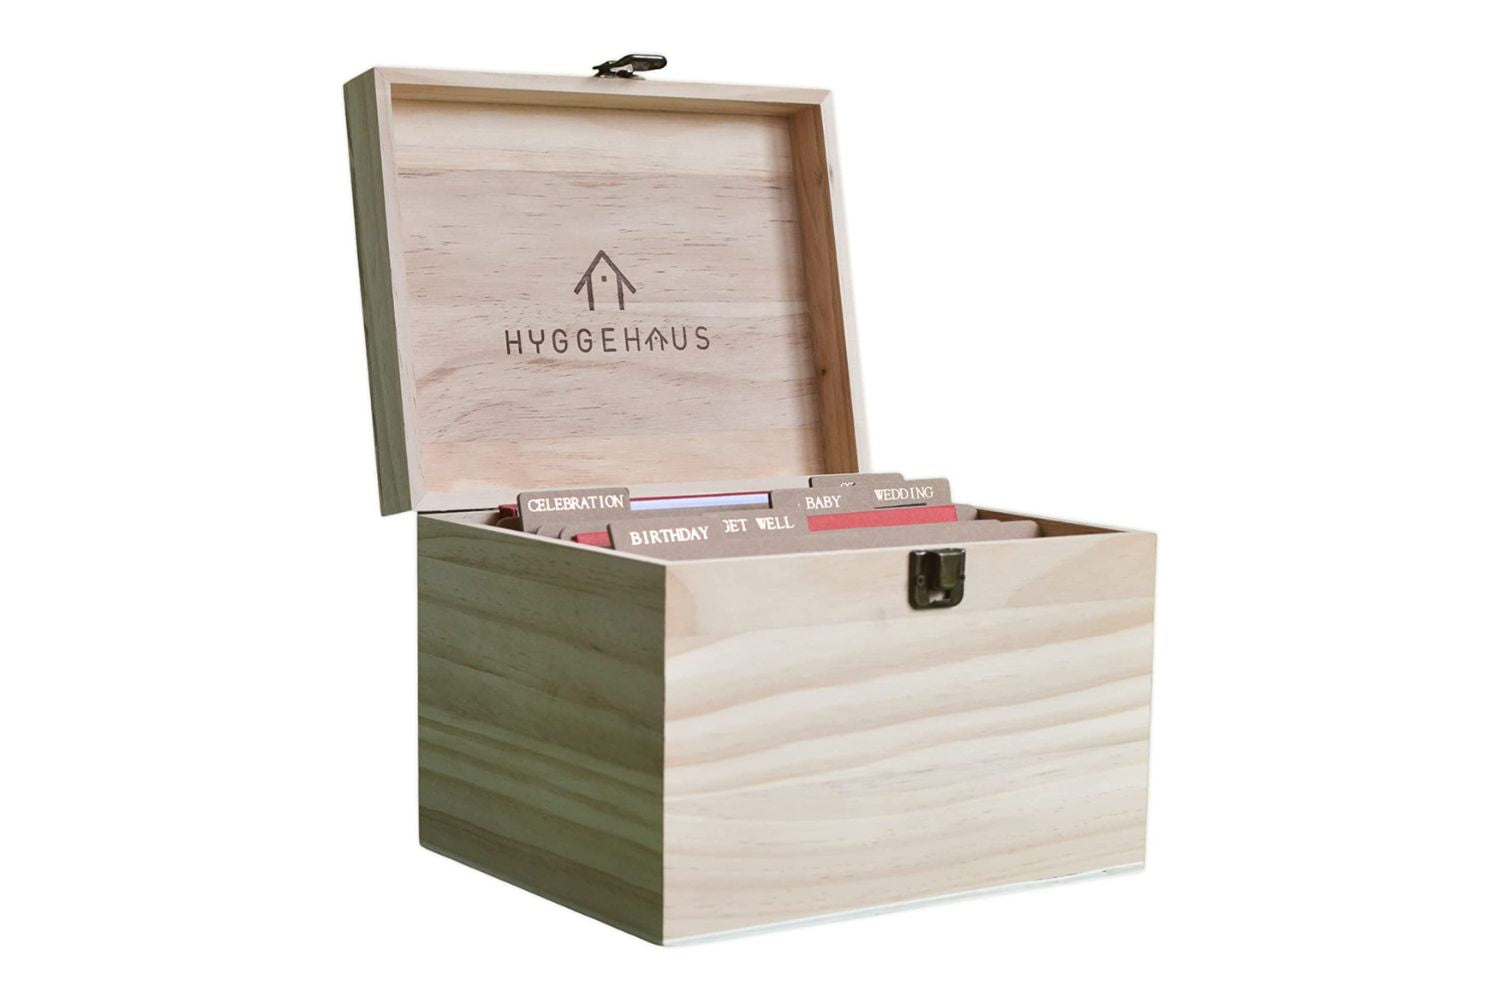 HYGGEHAUS Photo Storage Box with Dividers